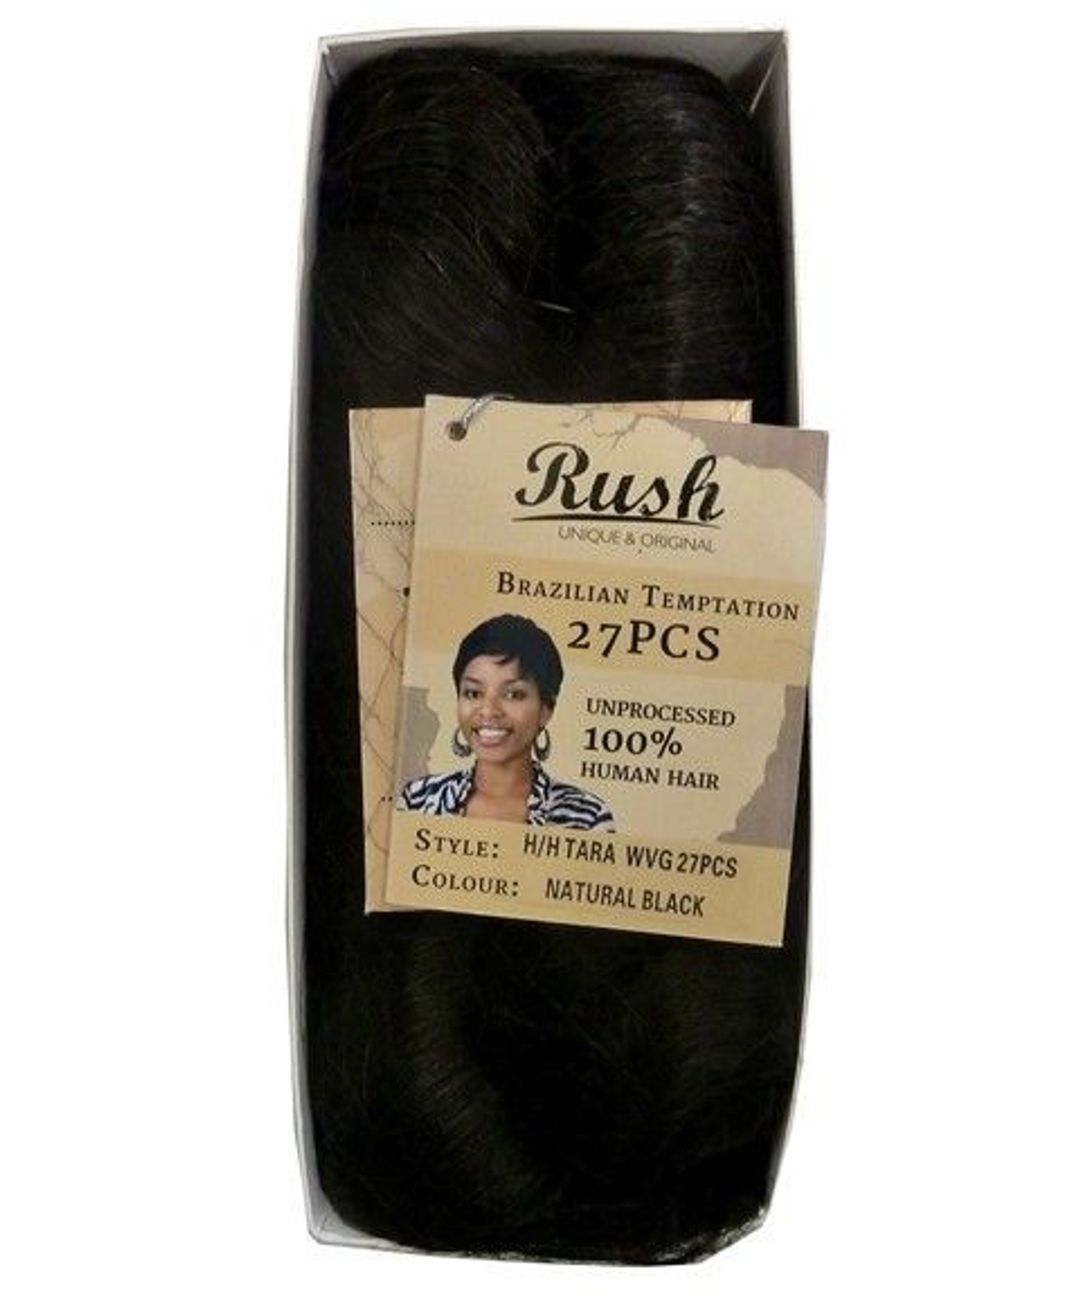 Rush Brazilian Temptation 100% Human Hair 27 Pcs - Natural Black